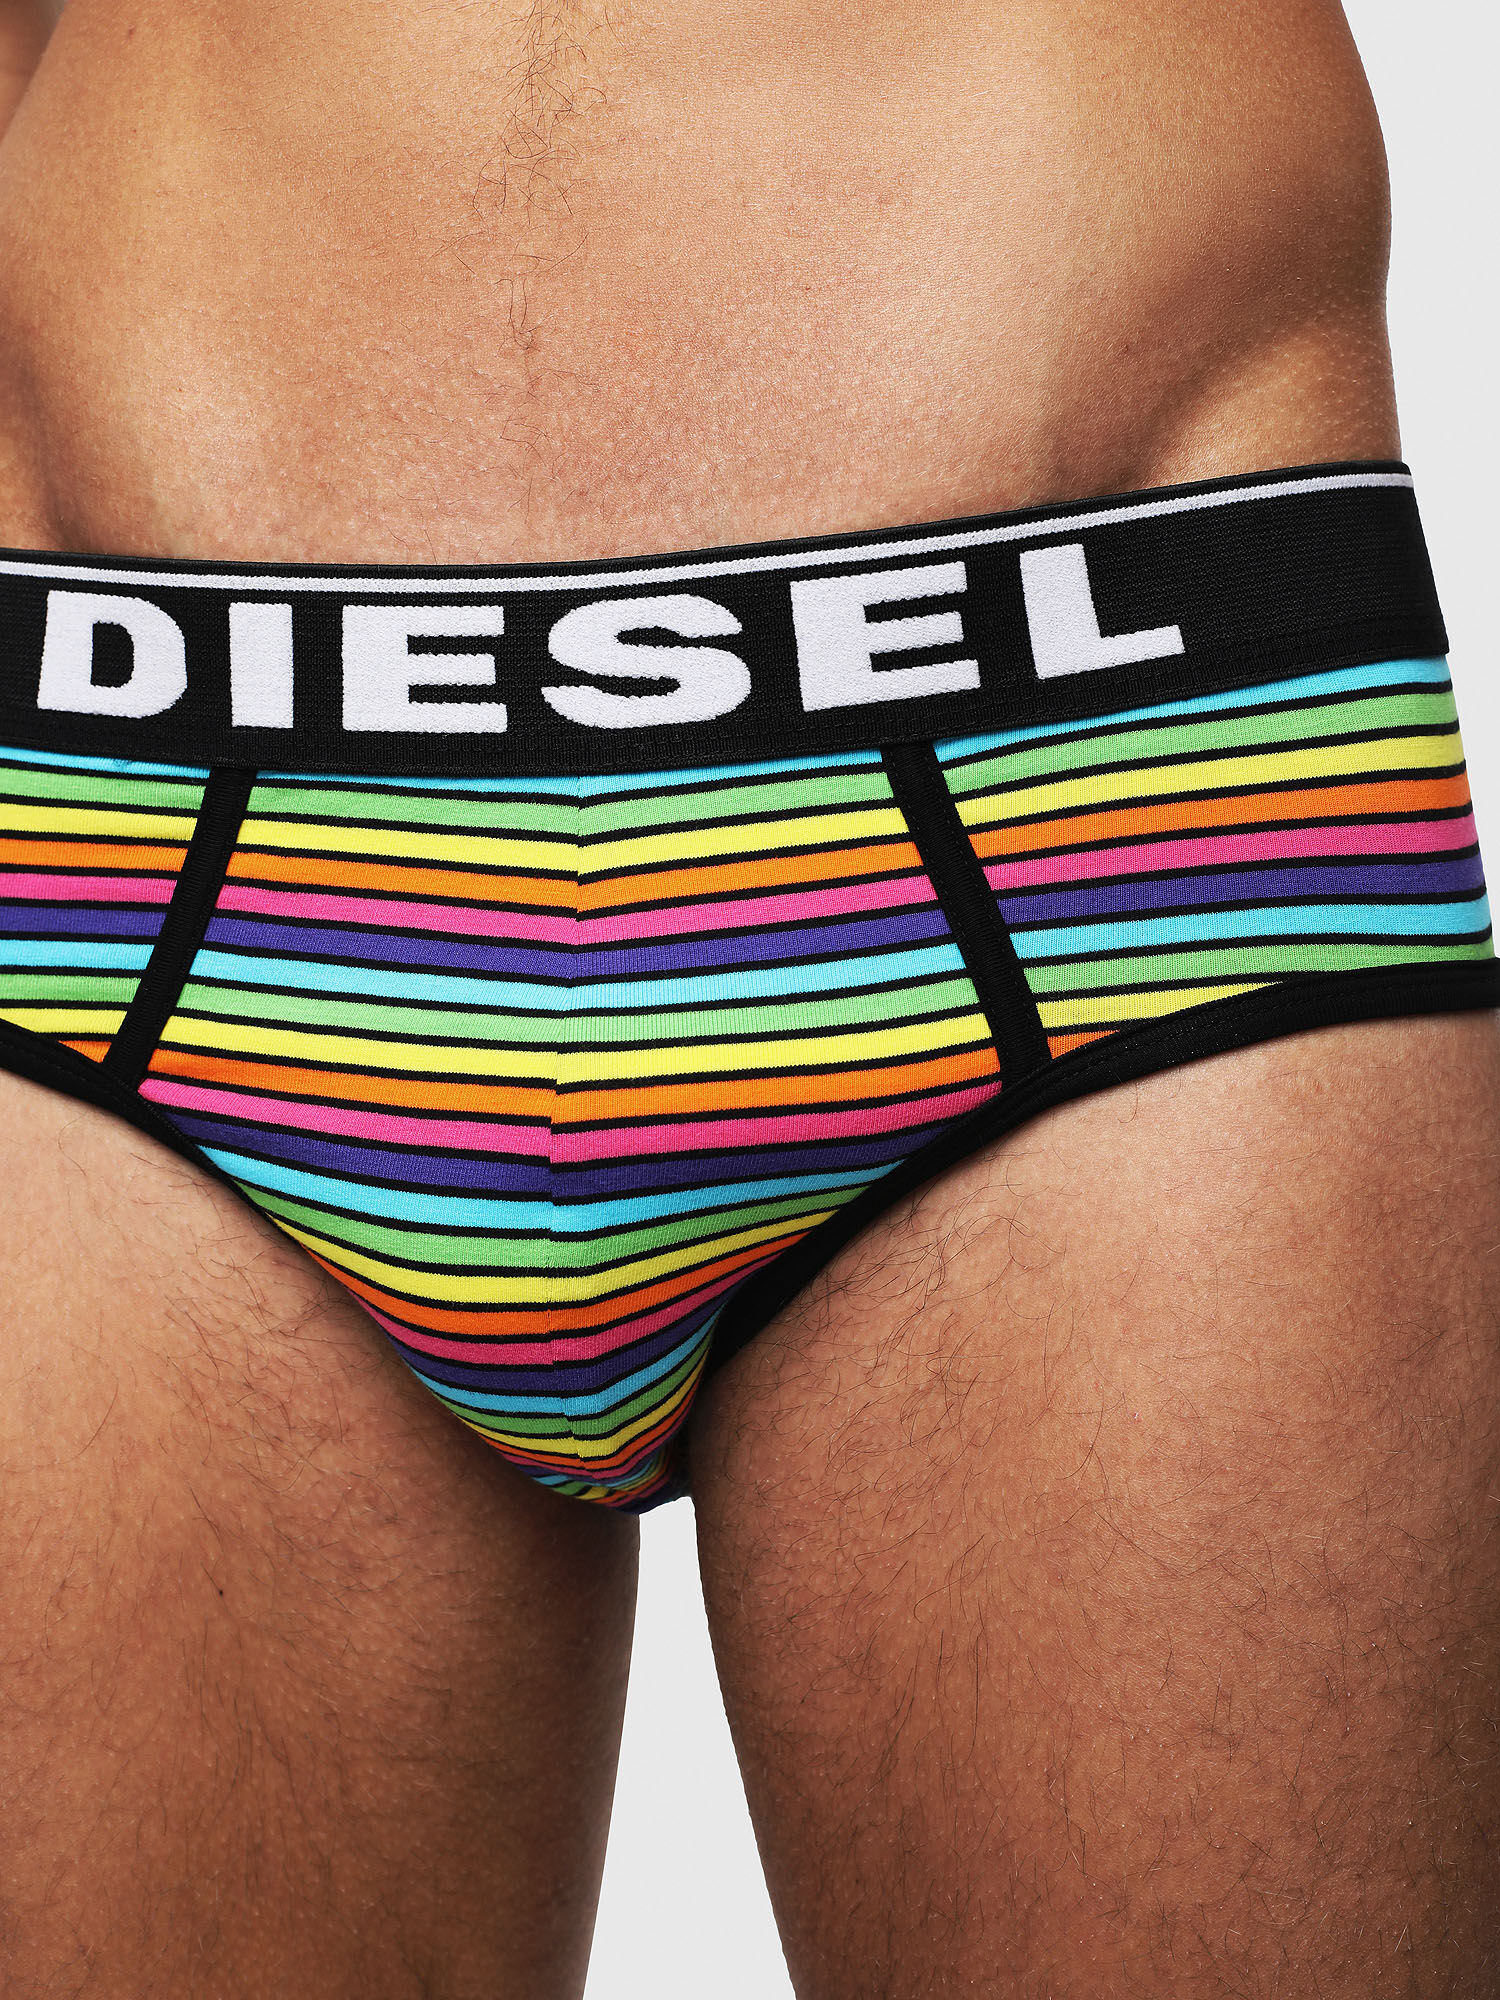 Diesel - UMBR-ANDRE, Multicolor - Image 3